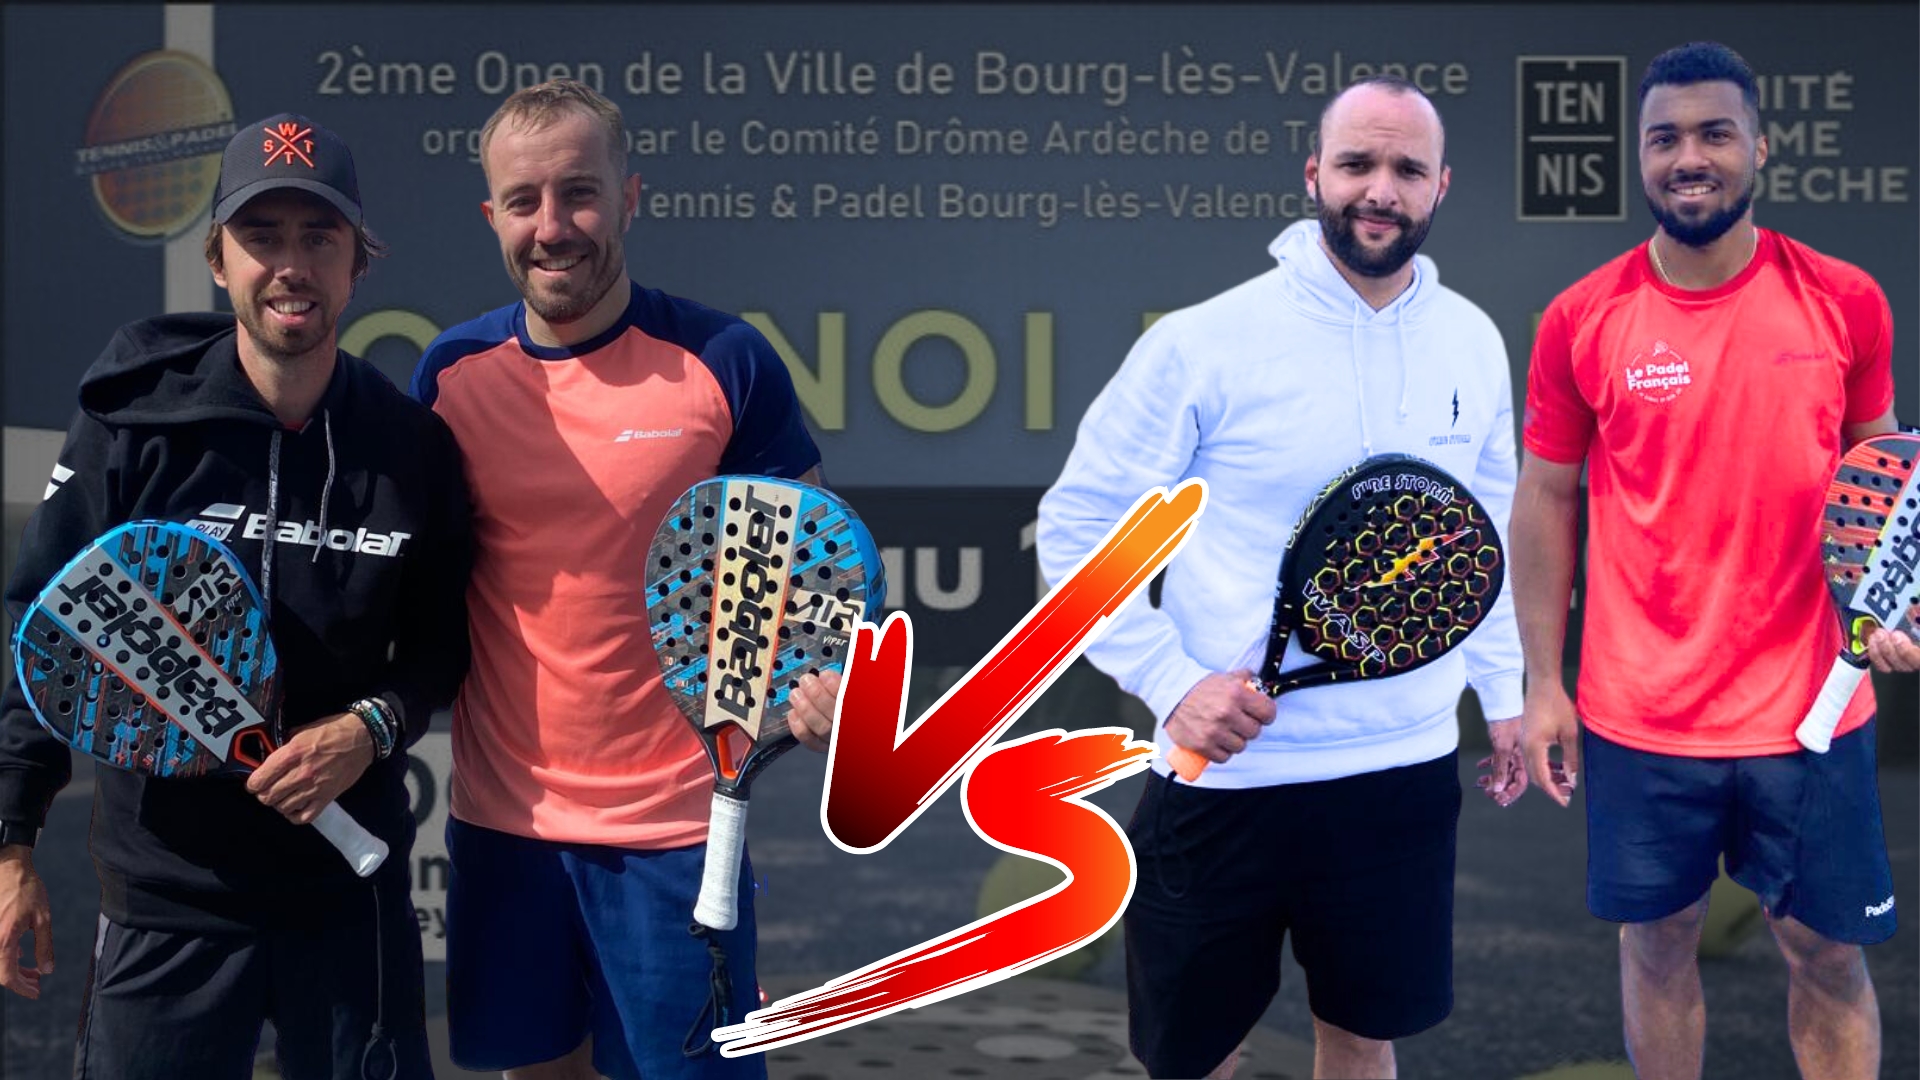 Final oberta Bourg-Lès-Valence: Vincent / Authier vs Sanchez / Rouanet